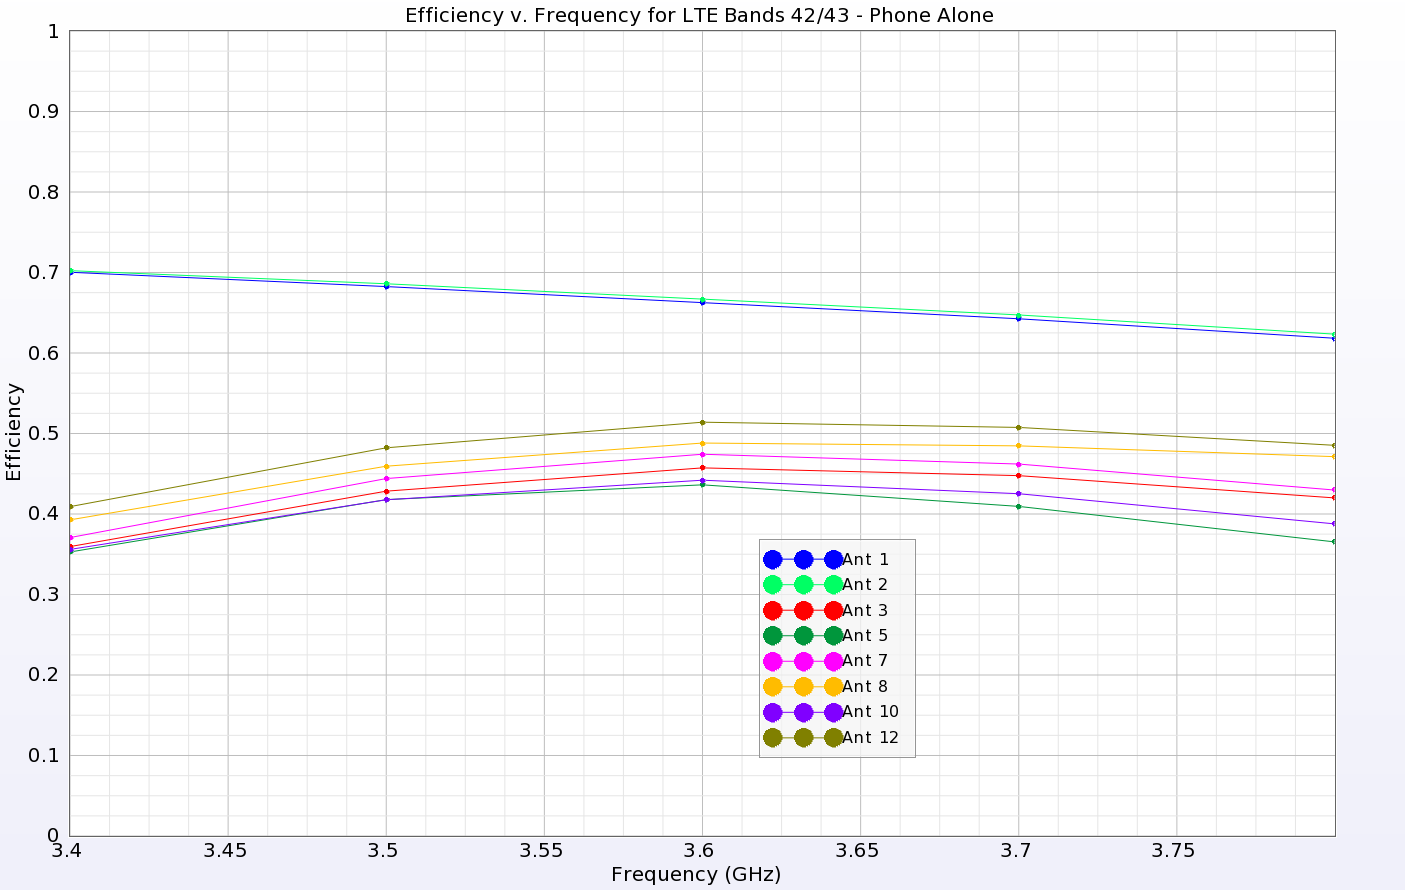 图 8：LTE 频段 42/43 的天线效率。位于手机两端的两个 IA 天线（1 和 2）显示出超过 60% 的较高效率，而位于手机两侧的 LA 天线的效率较低，在 35 到 50 之间...